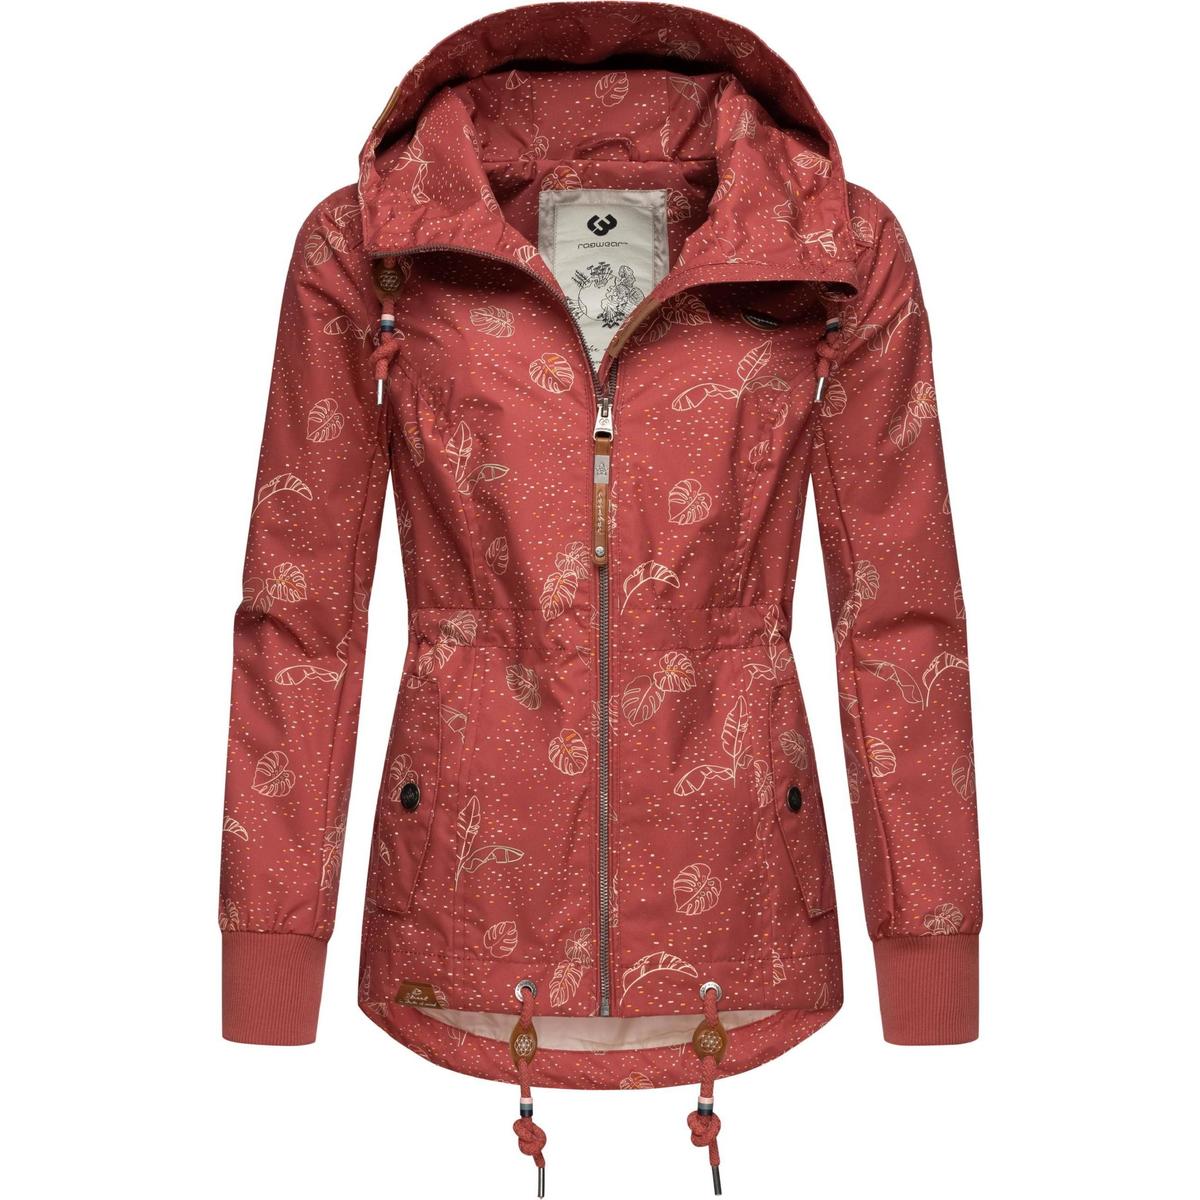 Kleidung Jacken Übergangsjacke Leaves Danka 109,95 Damen € - Ragwear Rosa